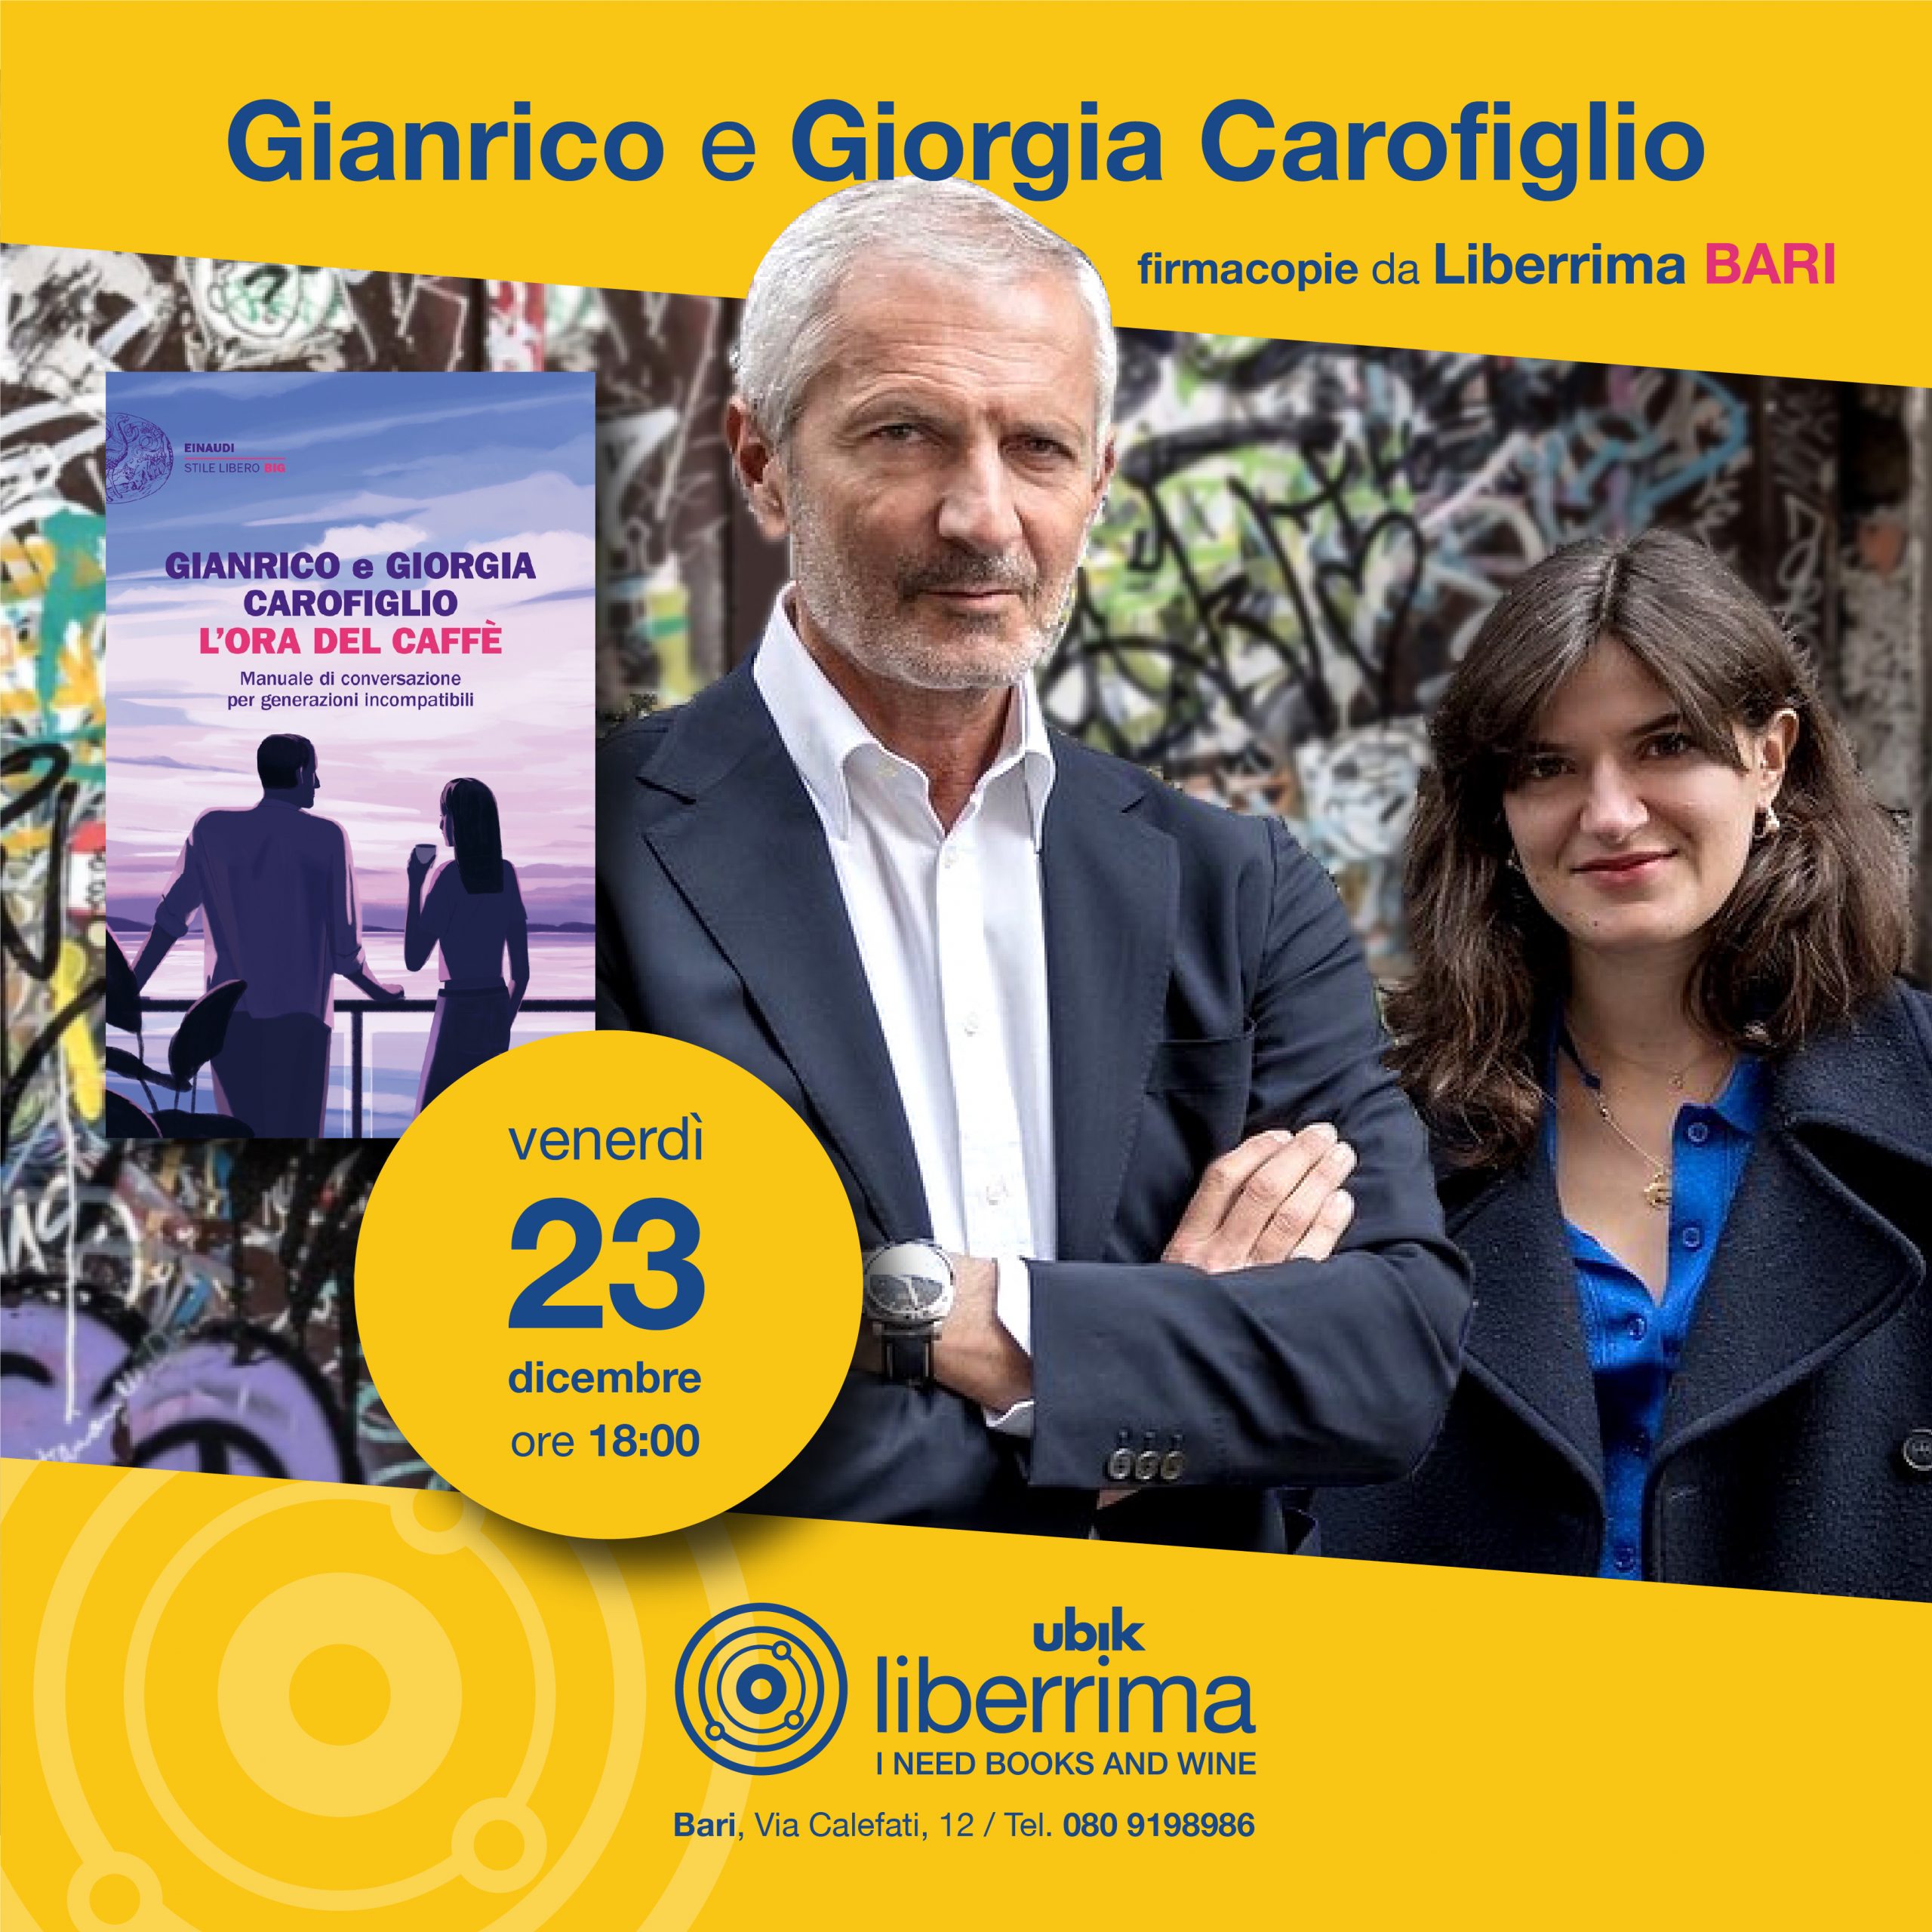 Gianrico Carofiglio: Un talk show per fare esercizio di civiltà - la  Repubblica